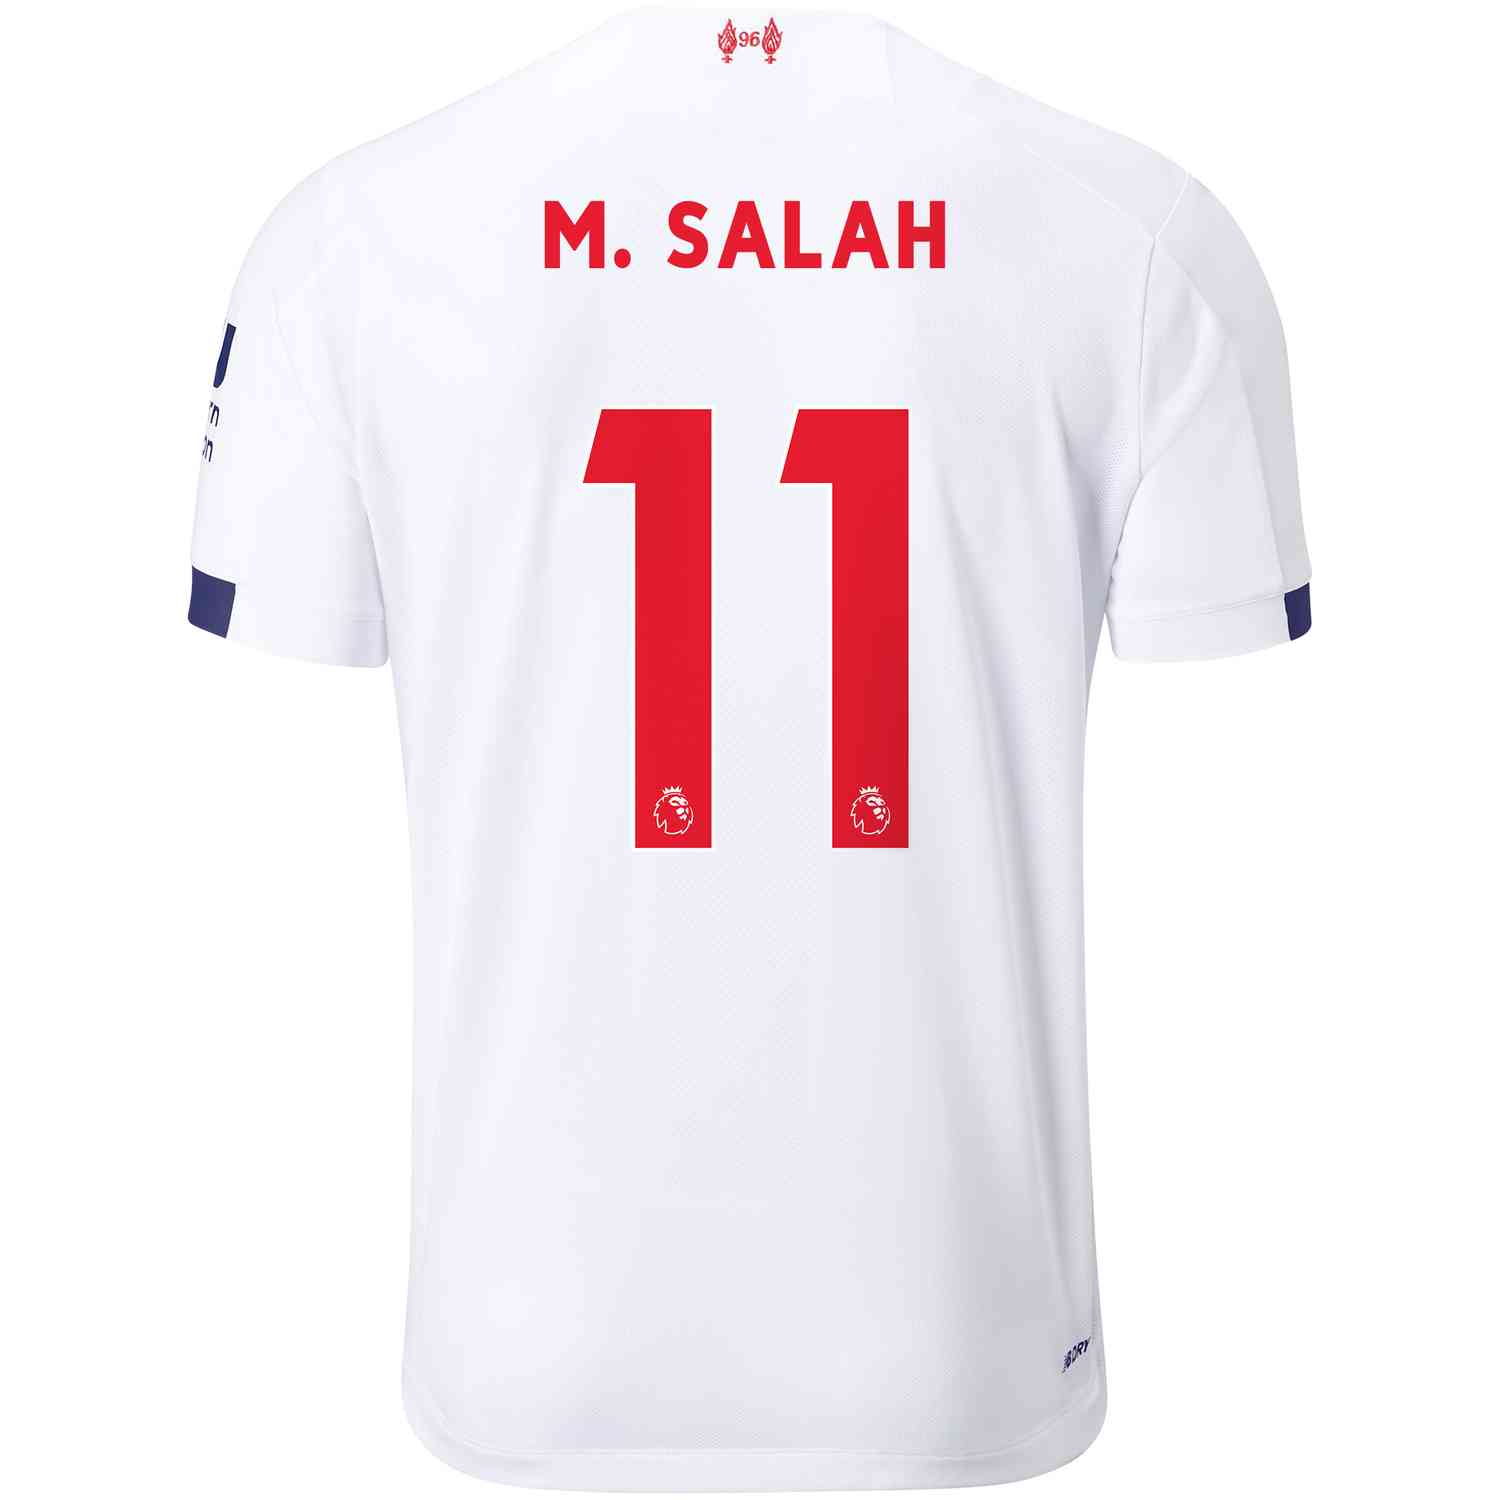 Mohamed Salah Liverpool Away Jersey 